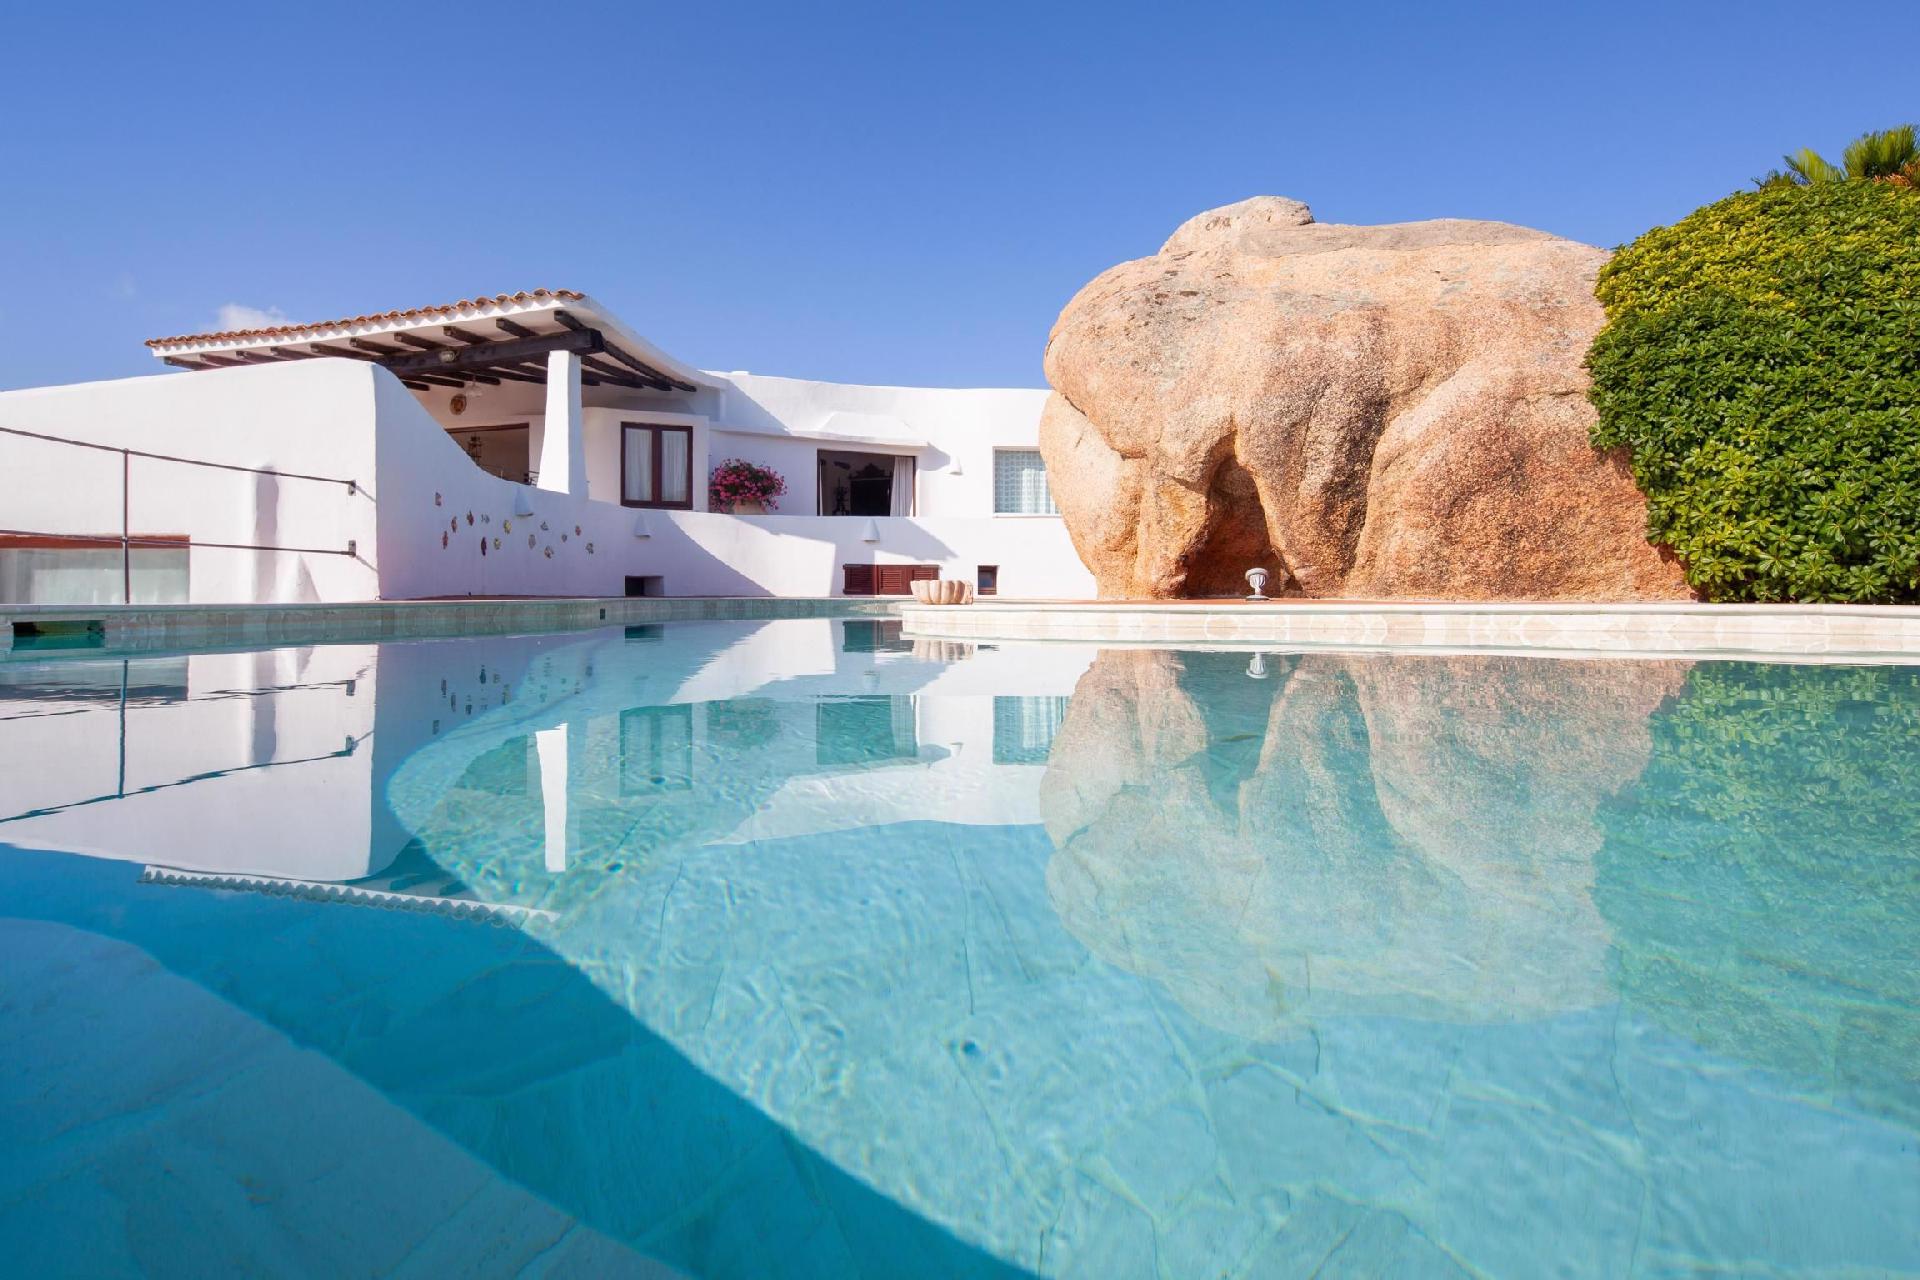 Ferienhaus in Punta Sardegna mit Privatem Pool  in Italien